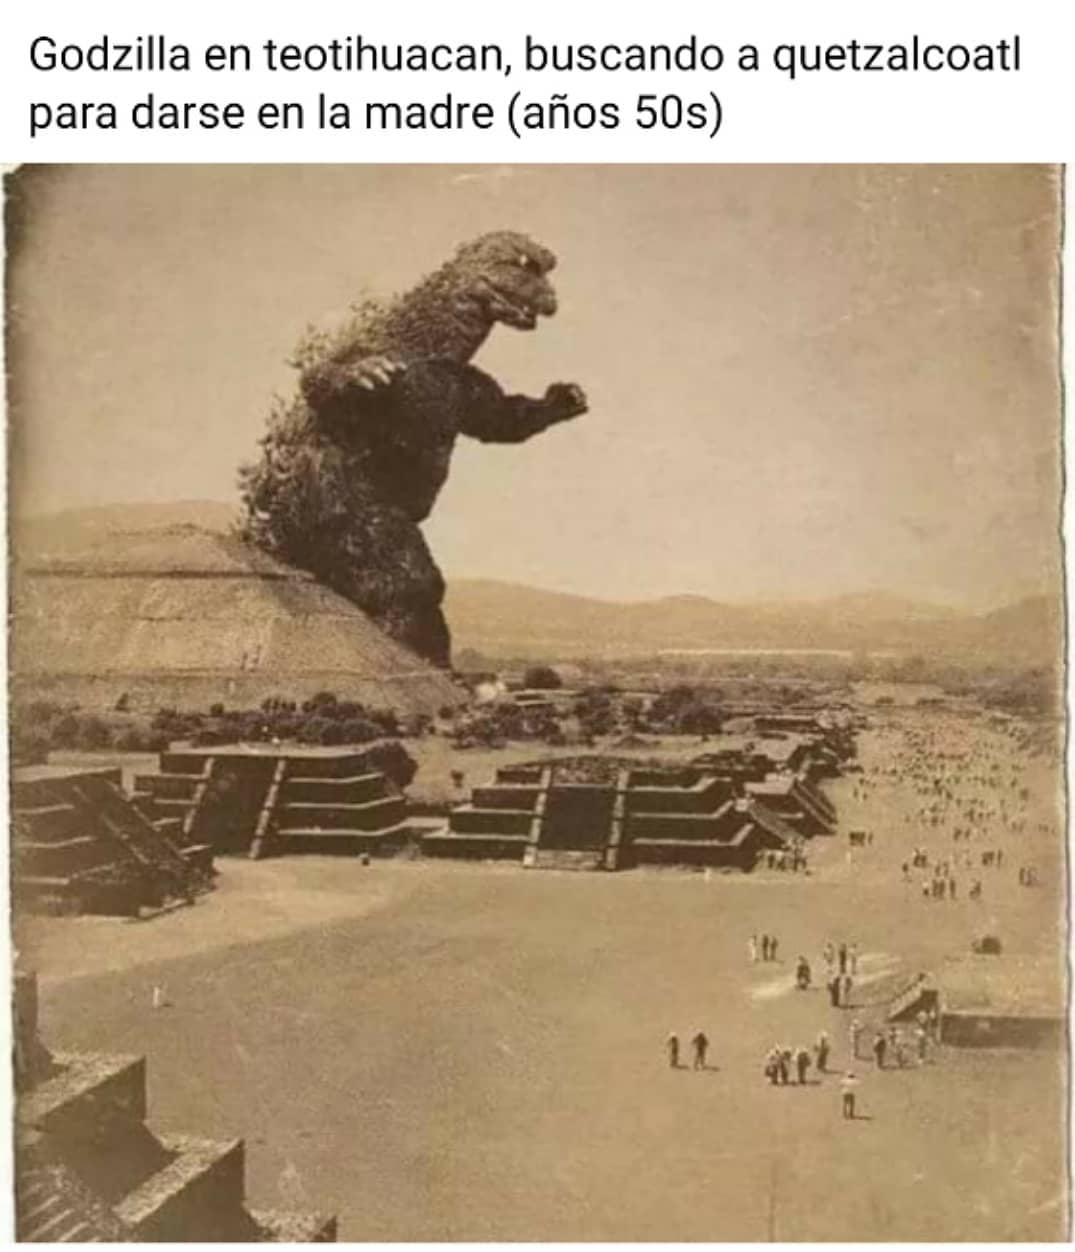 Godzilla en teotihuacan, buscando a quetzalcoatl para darse en la madre (años 50s)